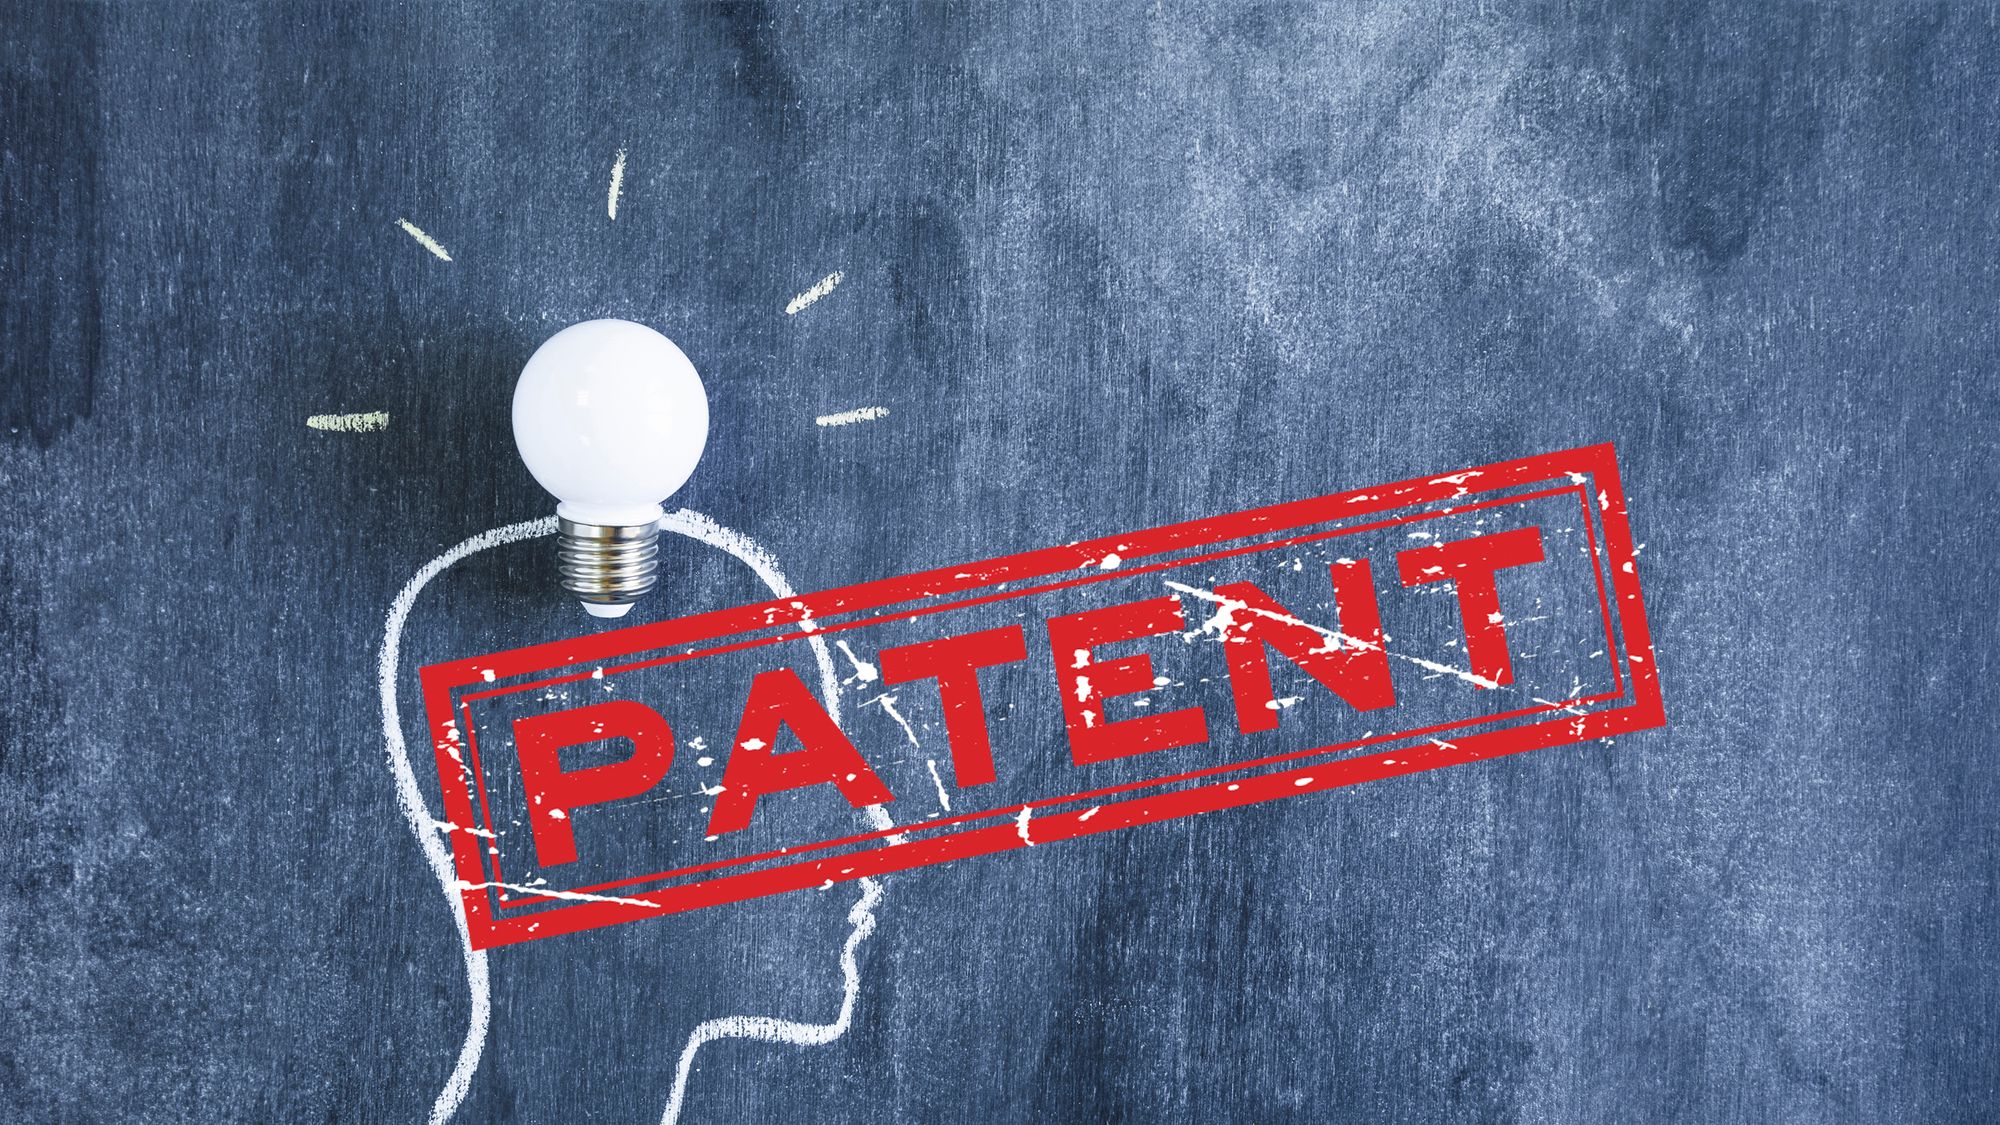 Metoda na "patent" - tak działają oszuści